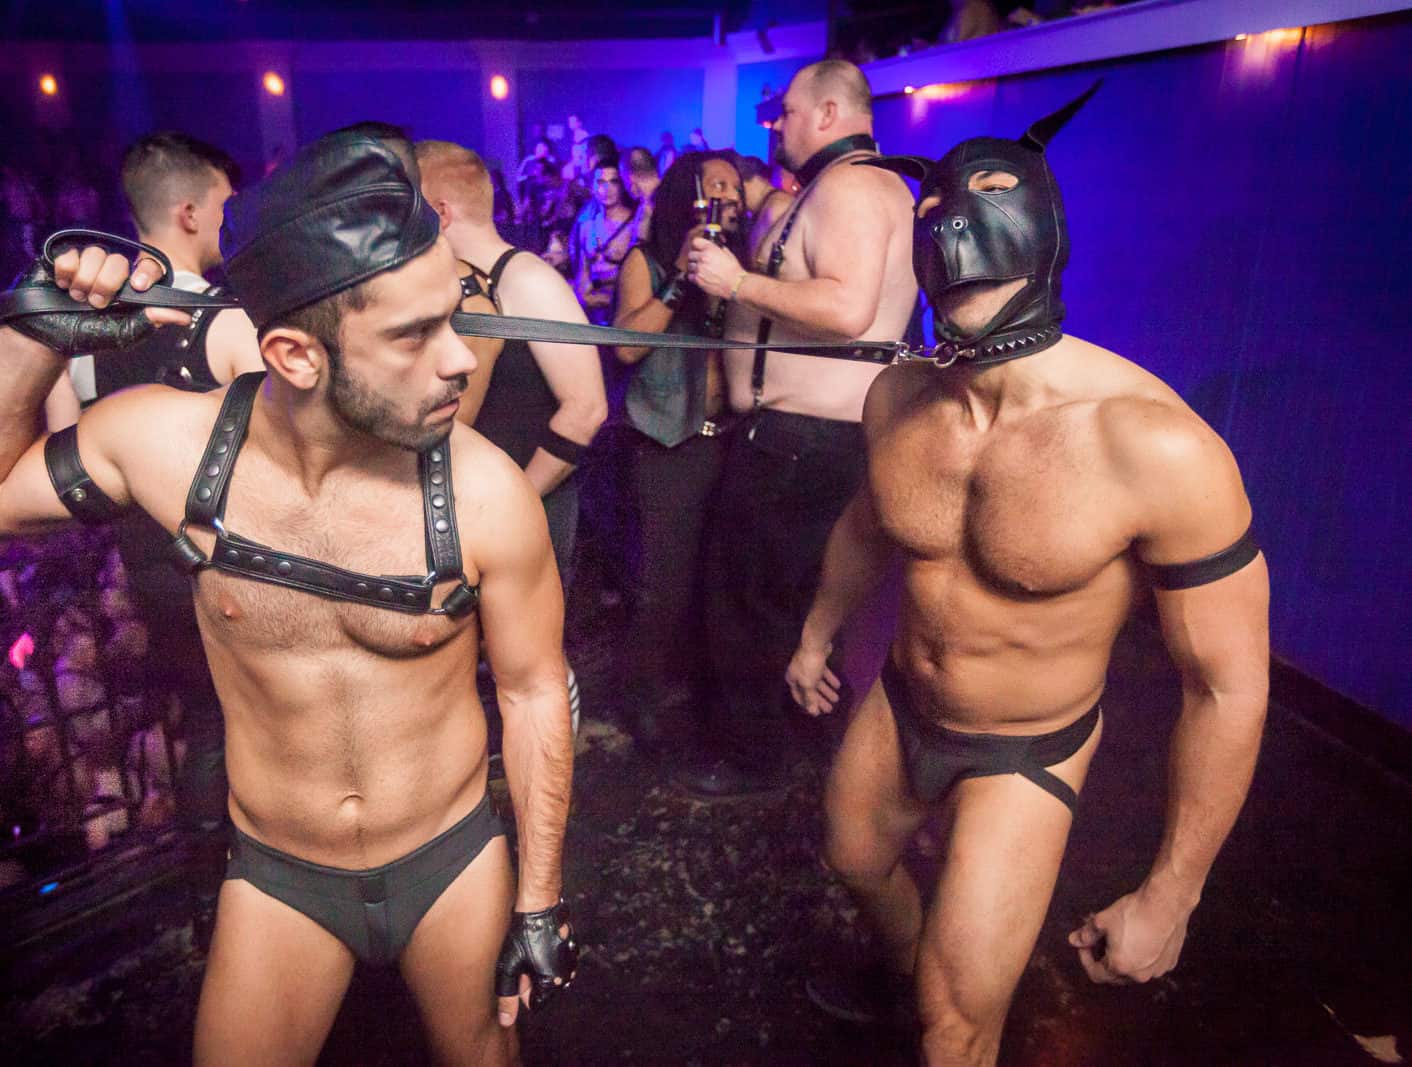 вечеринка геев смотреть онлайн фото 47